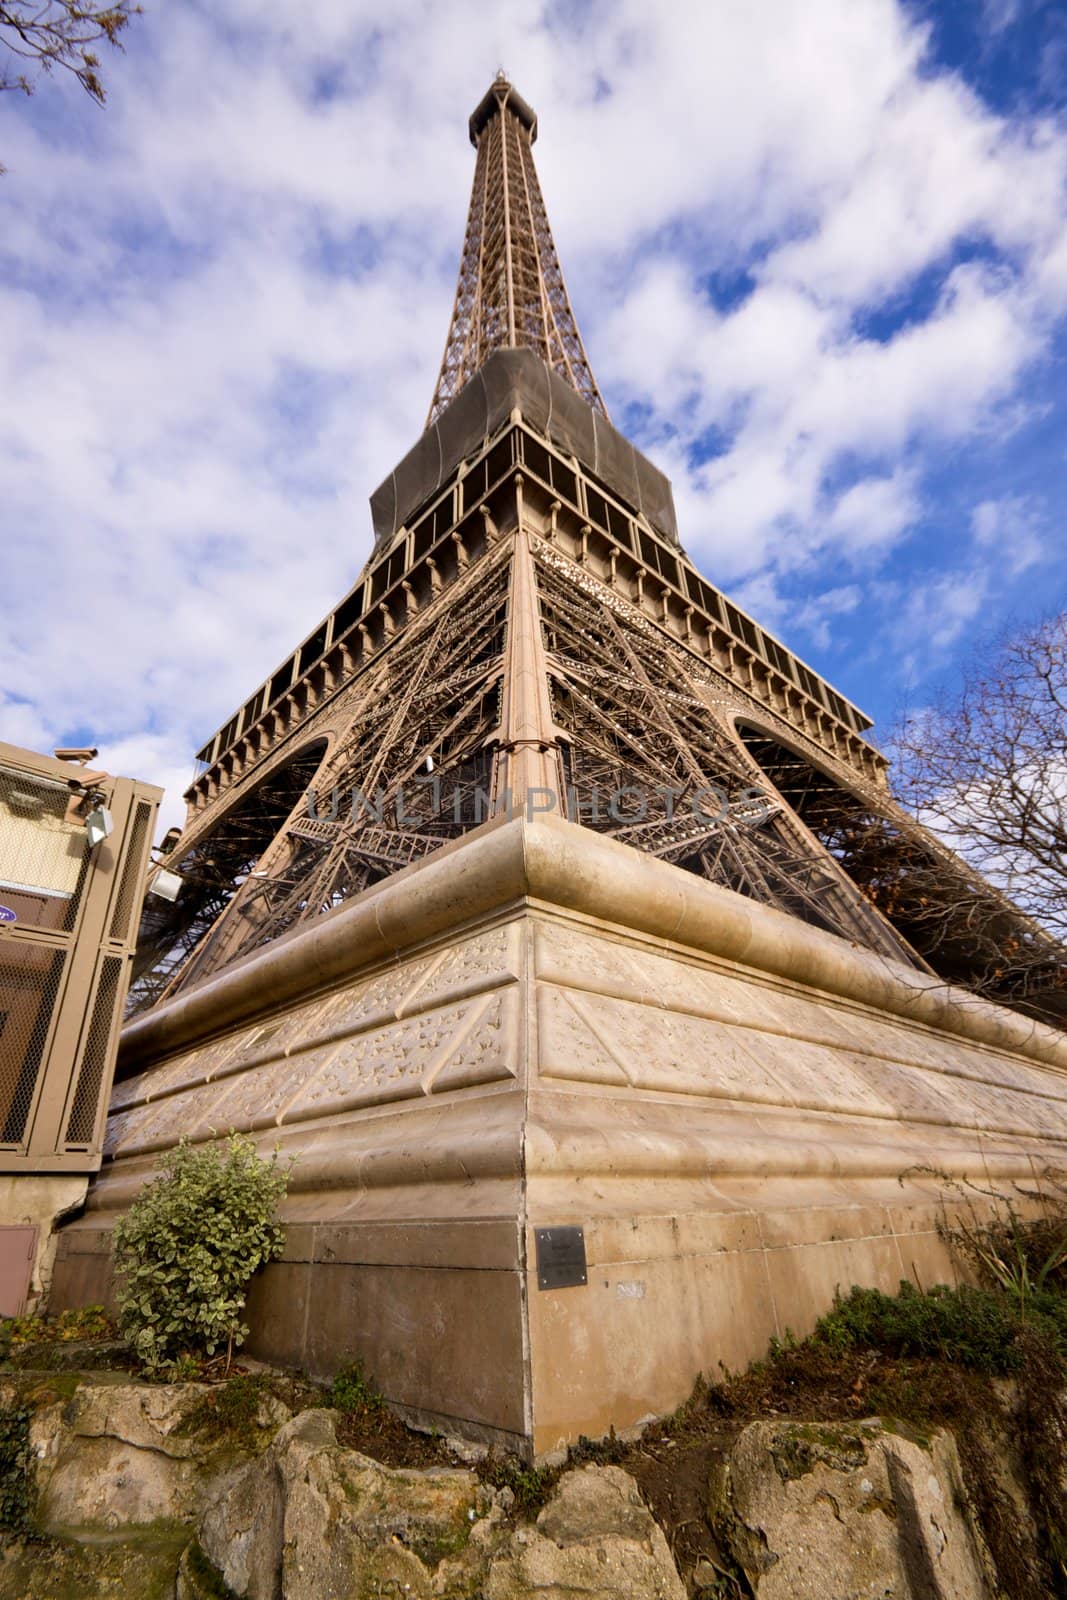 Unusual view of Eiffel Tower in Paris